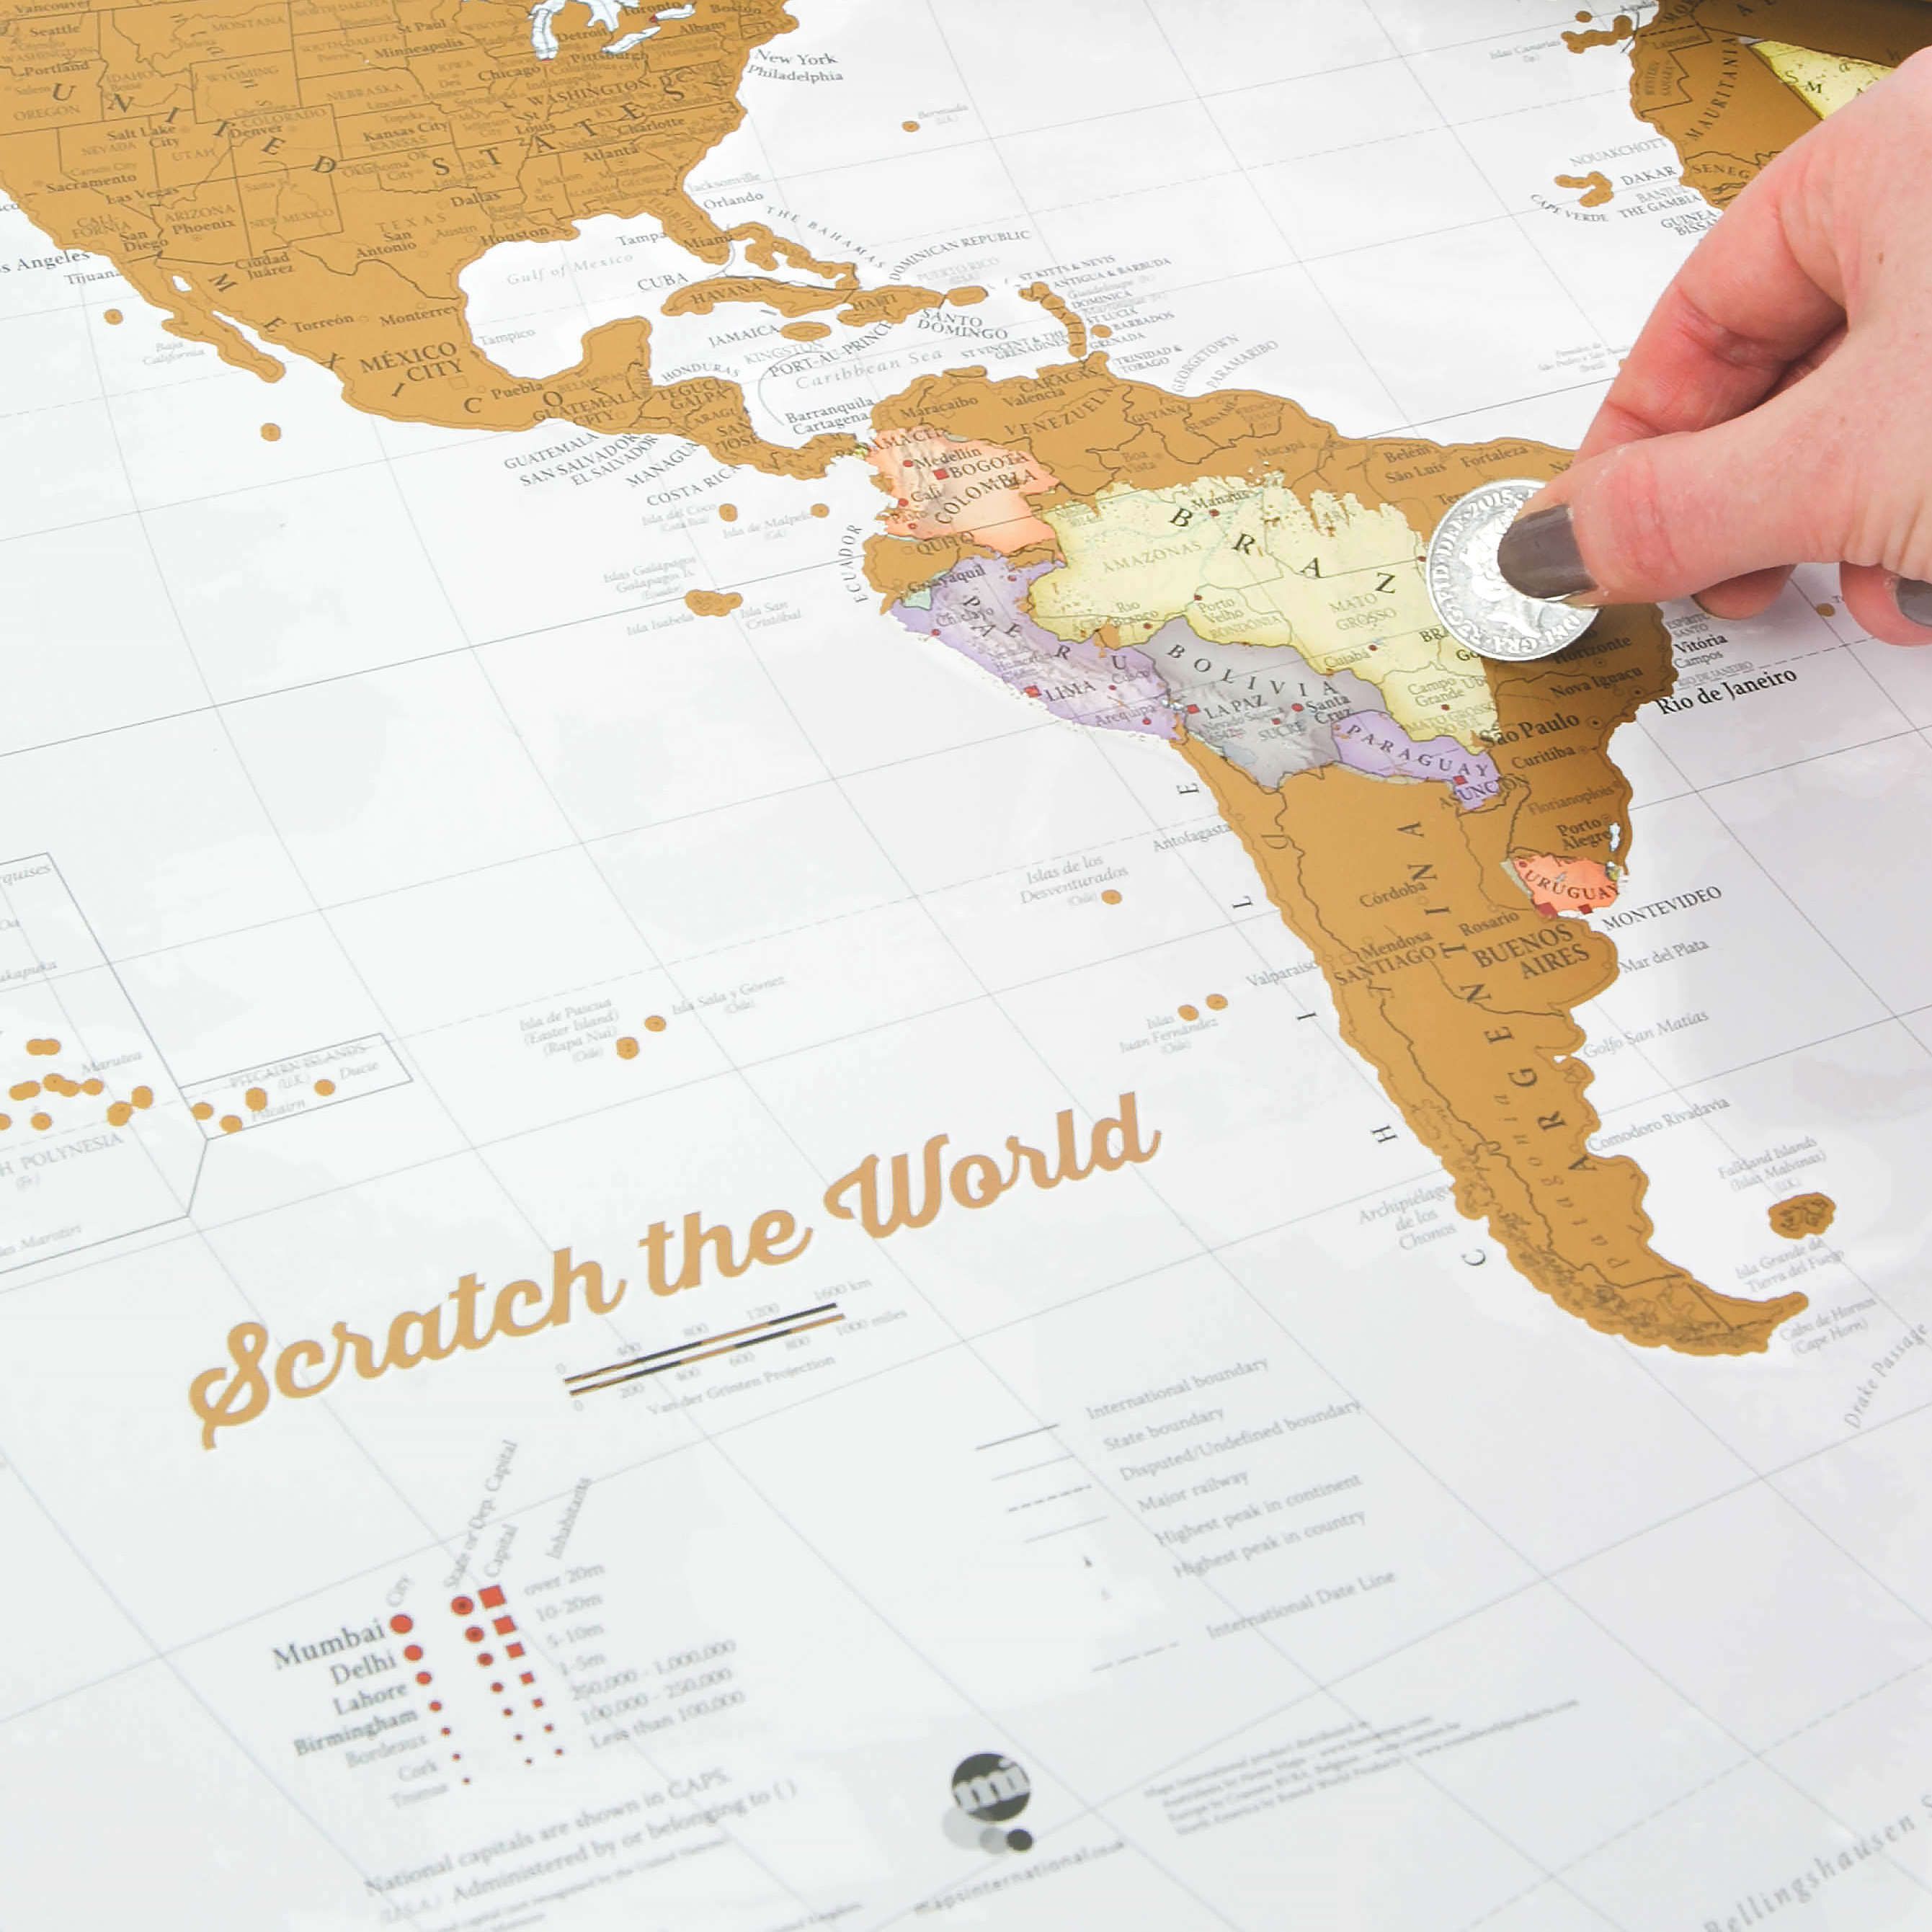 World Scratch Map Maps International Scratch The World Travel Map